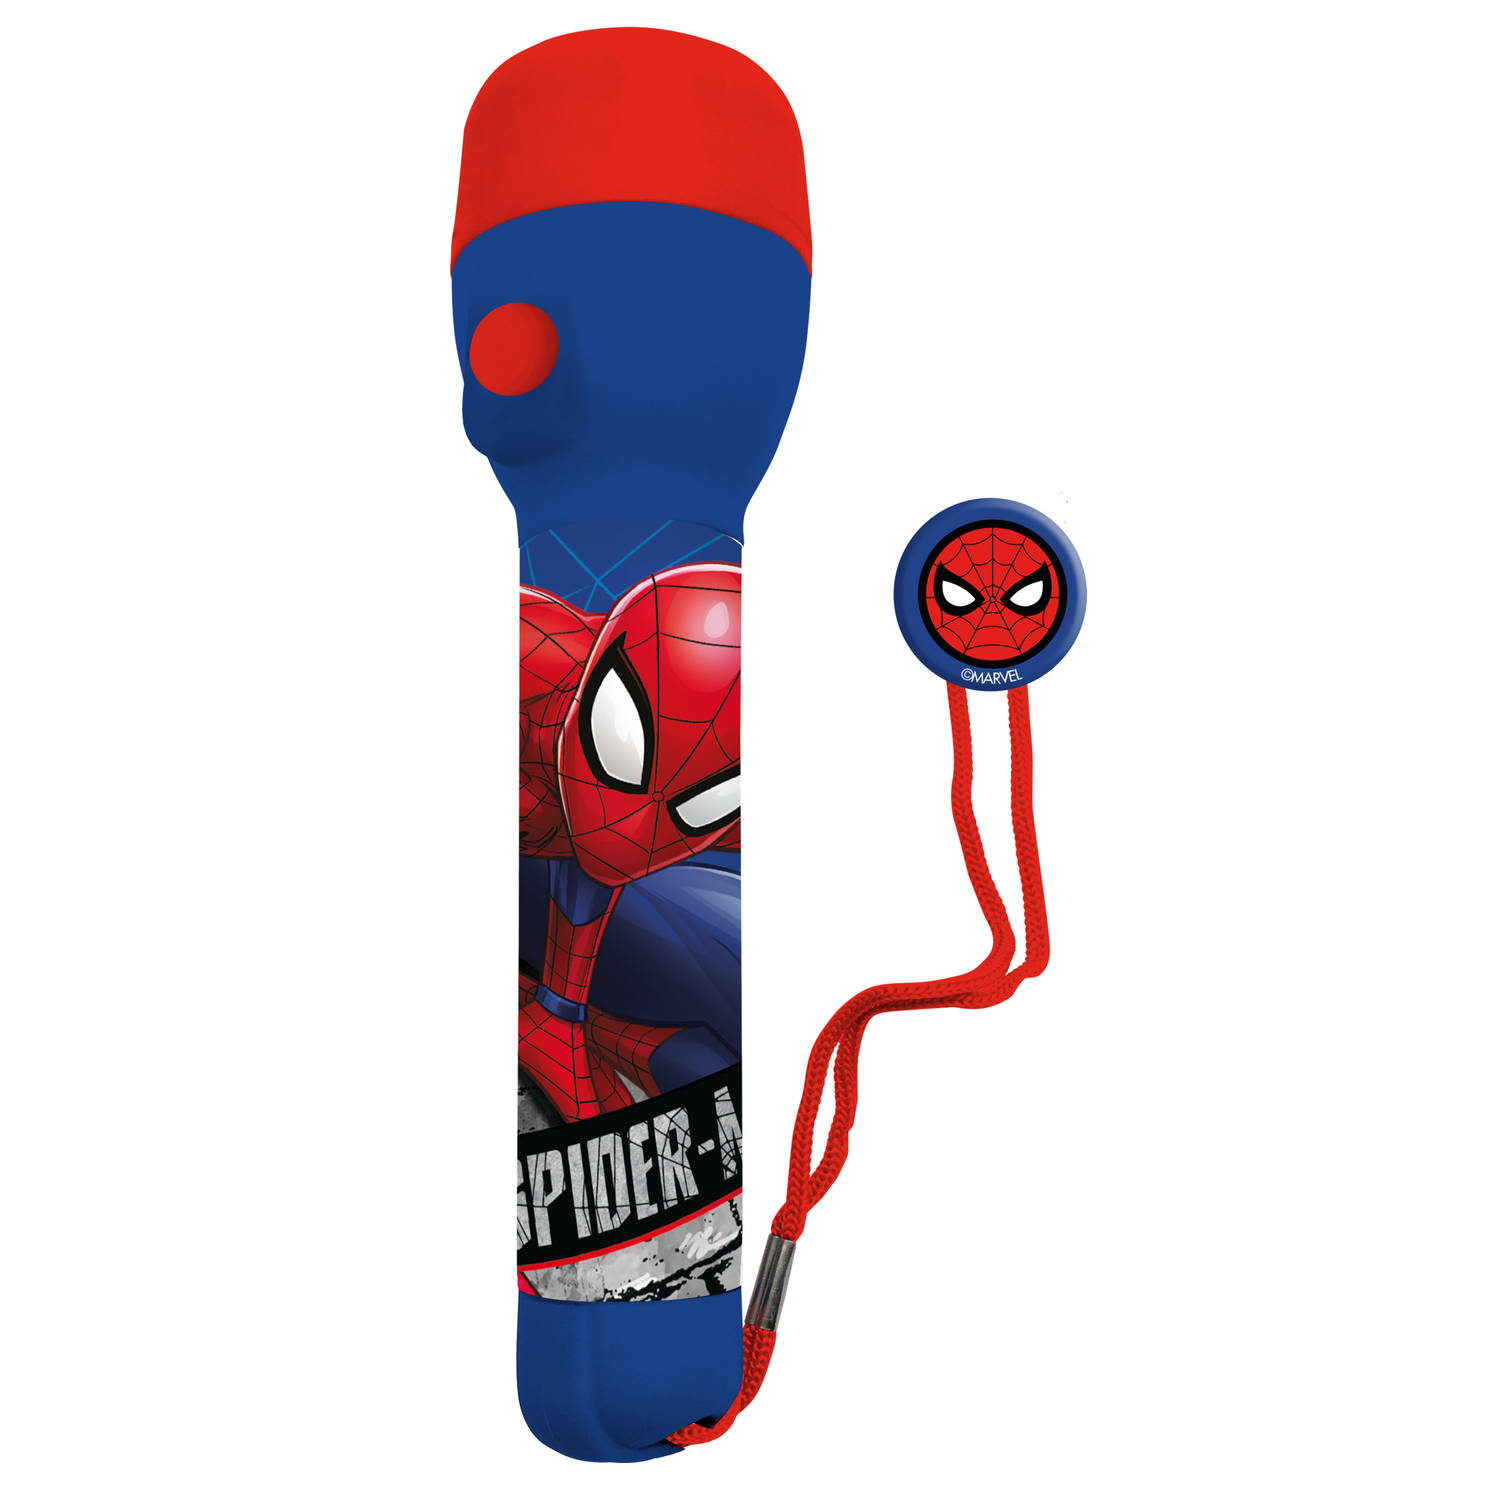 Marvel Spiderman kinder zaklamp/leeslamp - rood/blauw - kunststof - 16 x 4 cm - Kinder zaklampen